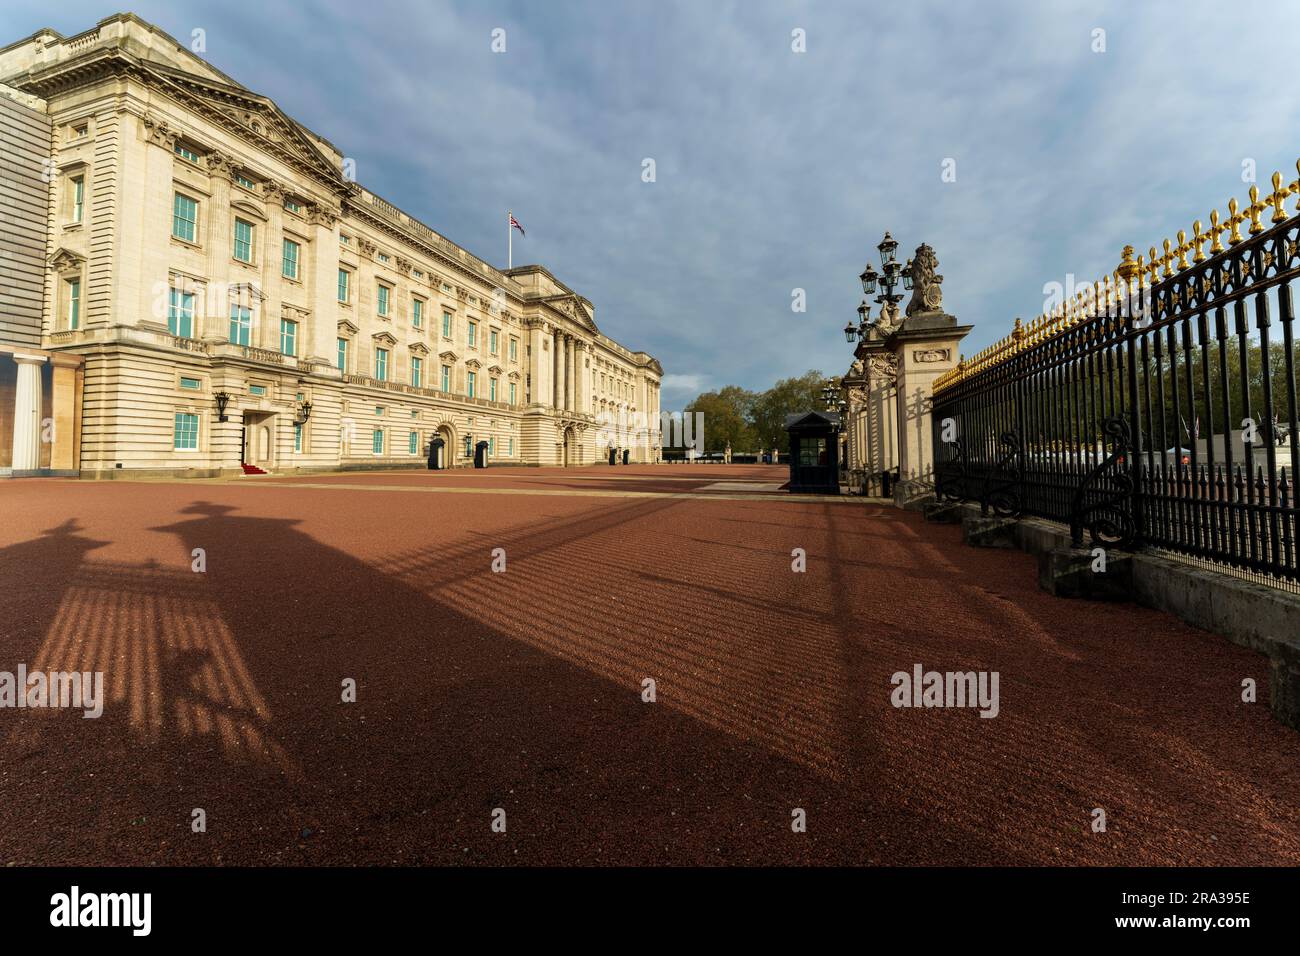 Palacio de Buckingham, residencia real del monarca, sin gente durante la Semana de la Coronación del Rey Carlos III. Las excursiones al palacio son una de las principales atracciones turísticas. Foto de stock